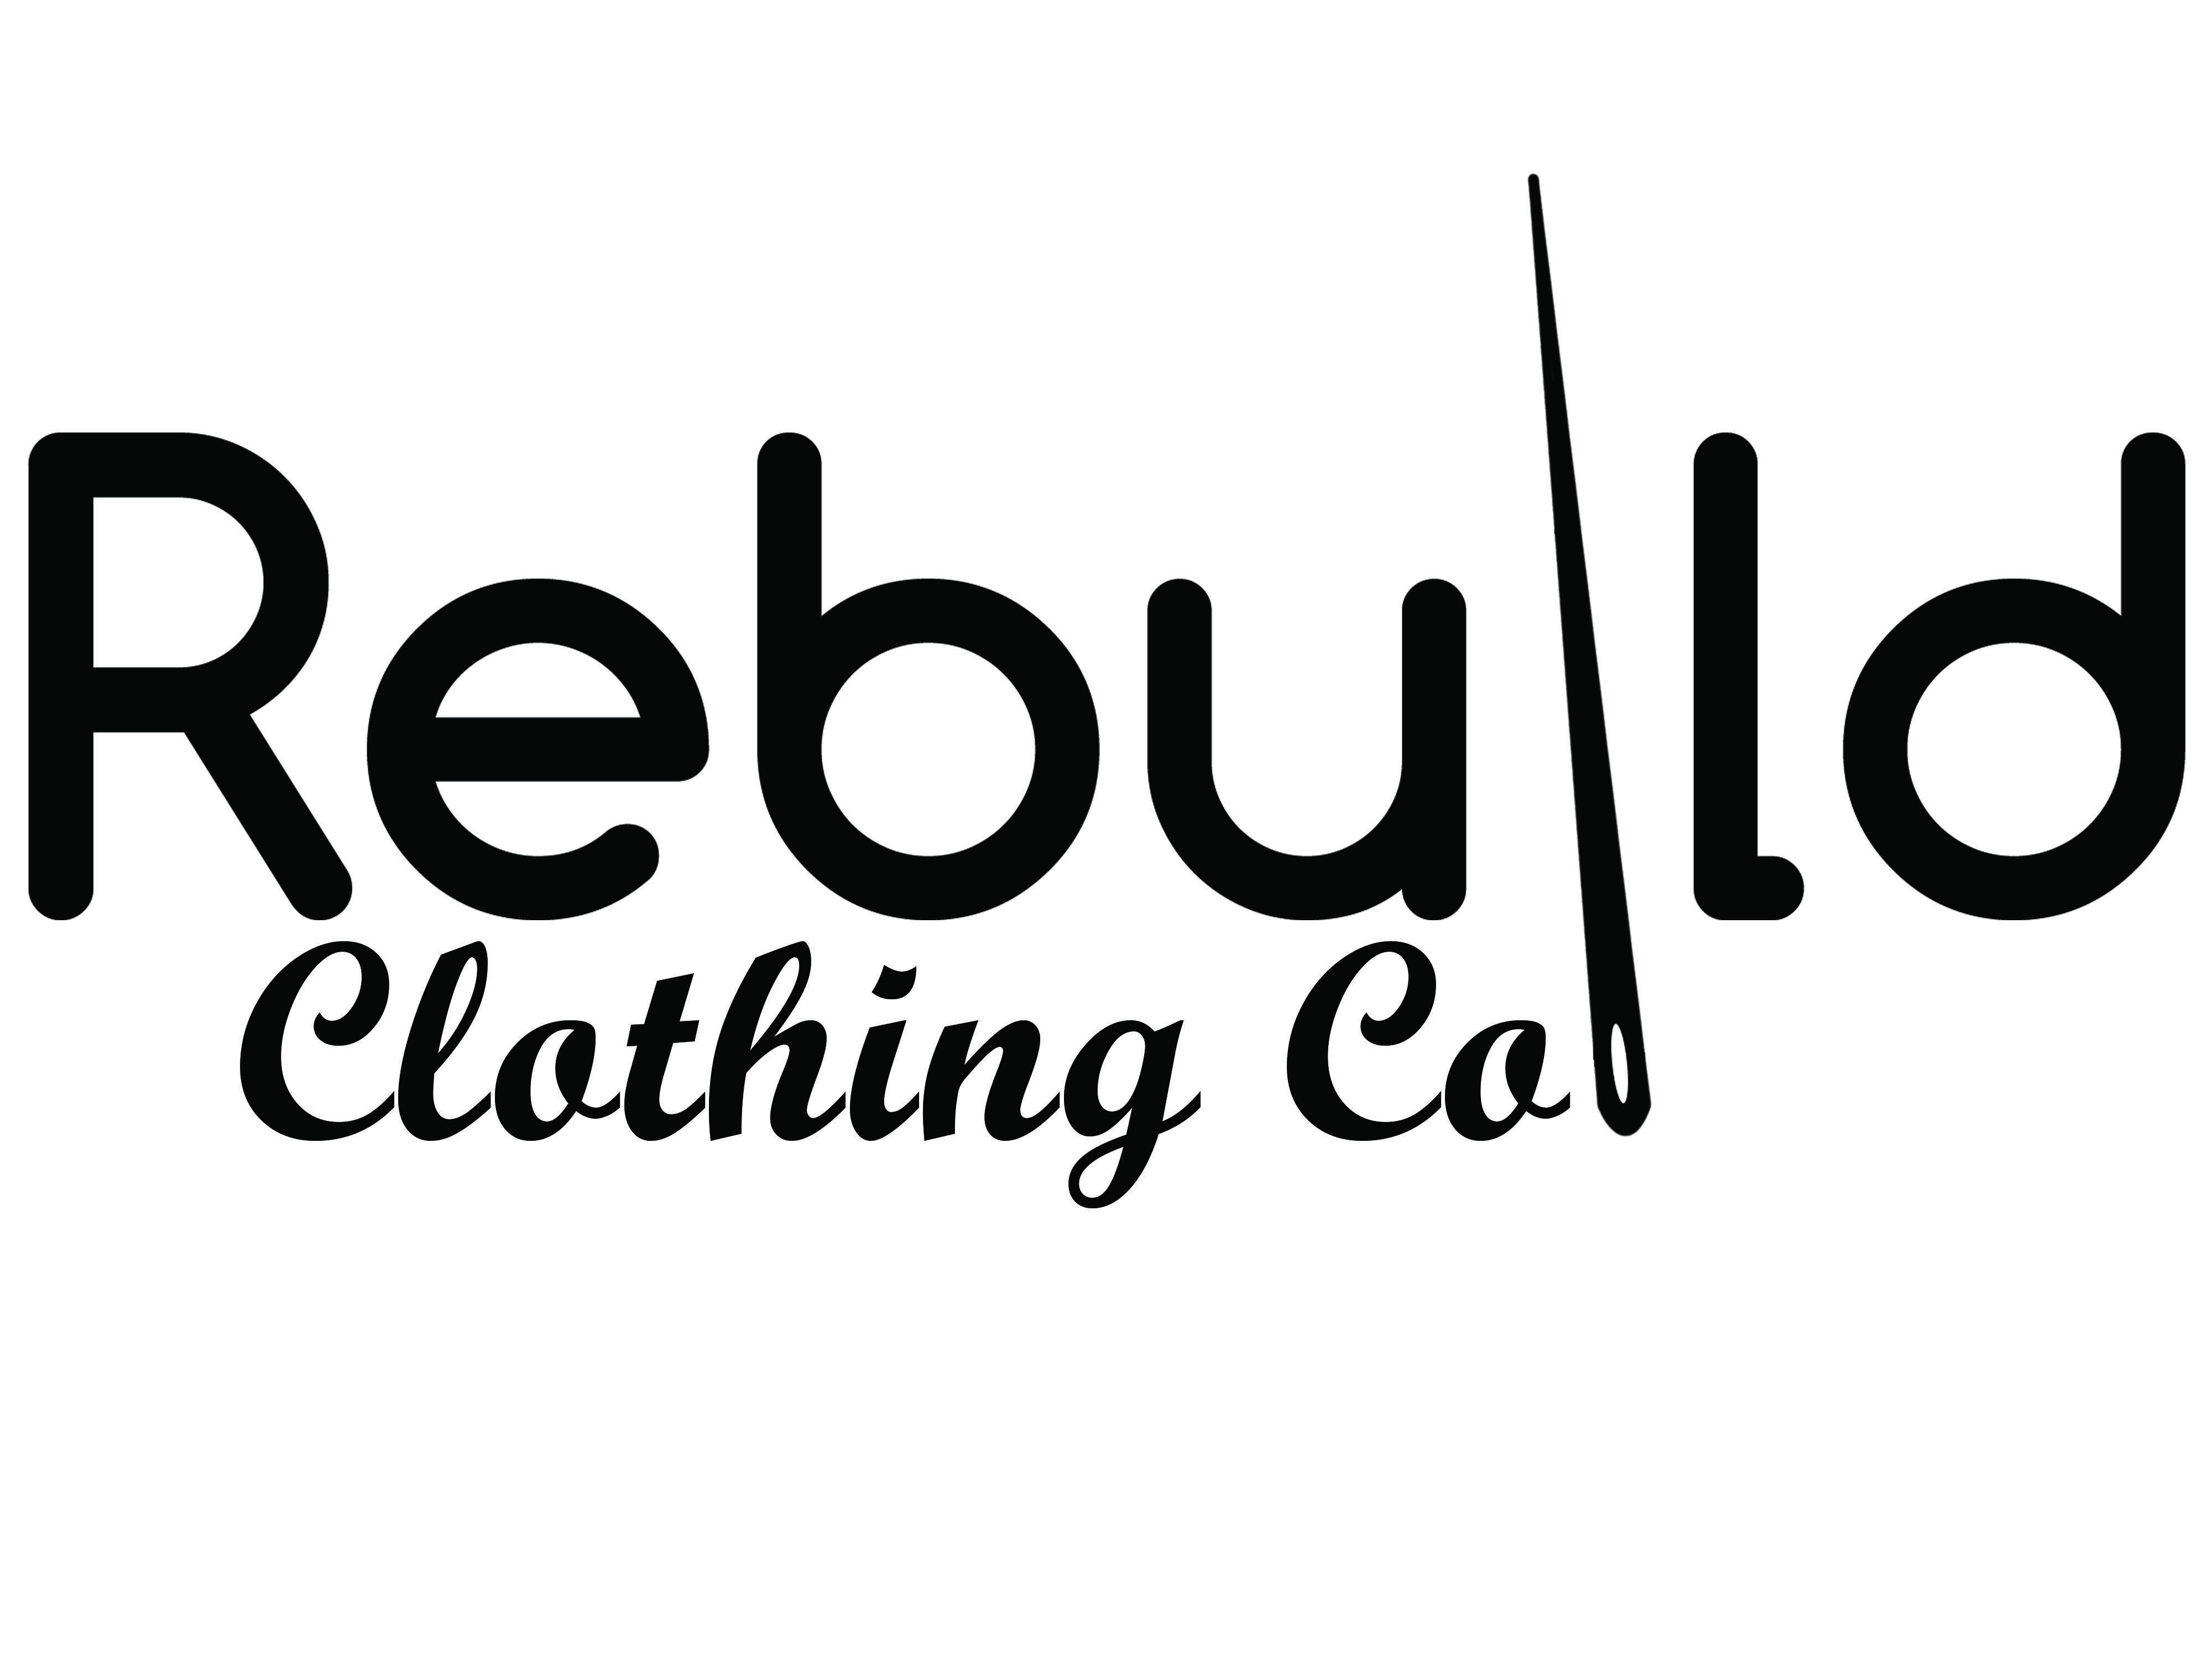 Rebuild White Logo - Logo for Rebuild clothing co. based out of Miami, FL